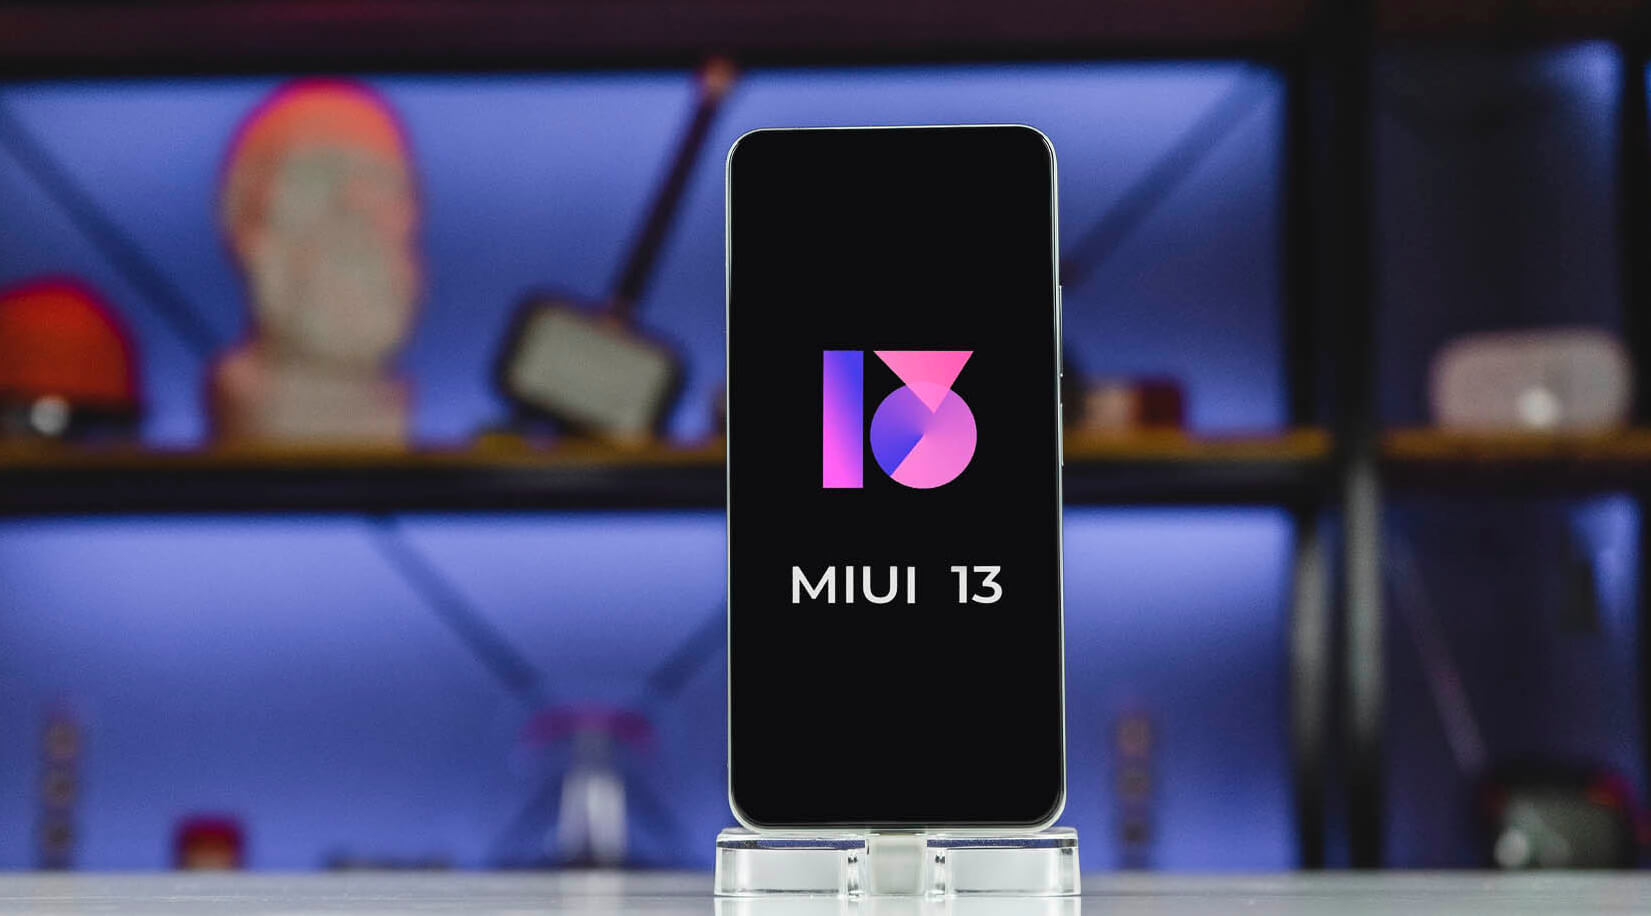 Altri due smartphone Xiaomi riceveranno una shell MIUI 13 stabile il 28 dicembre